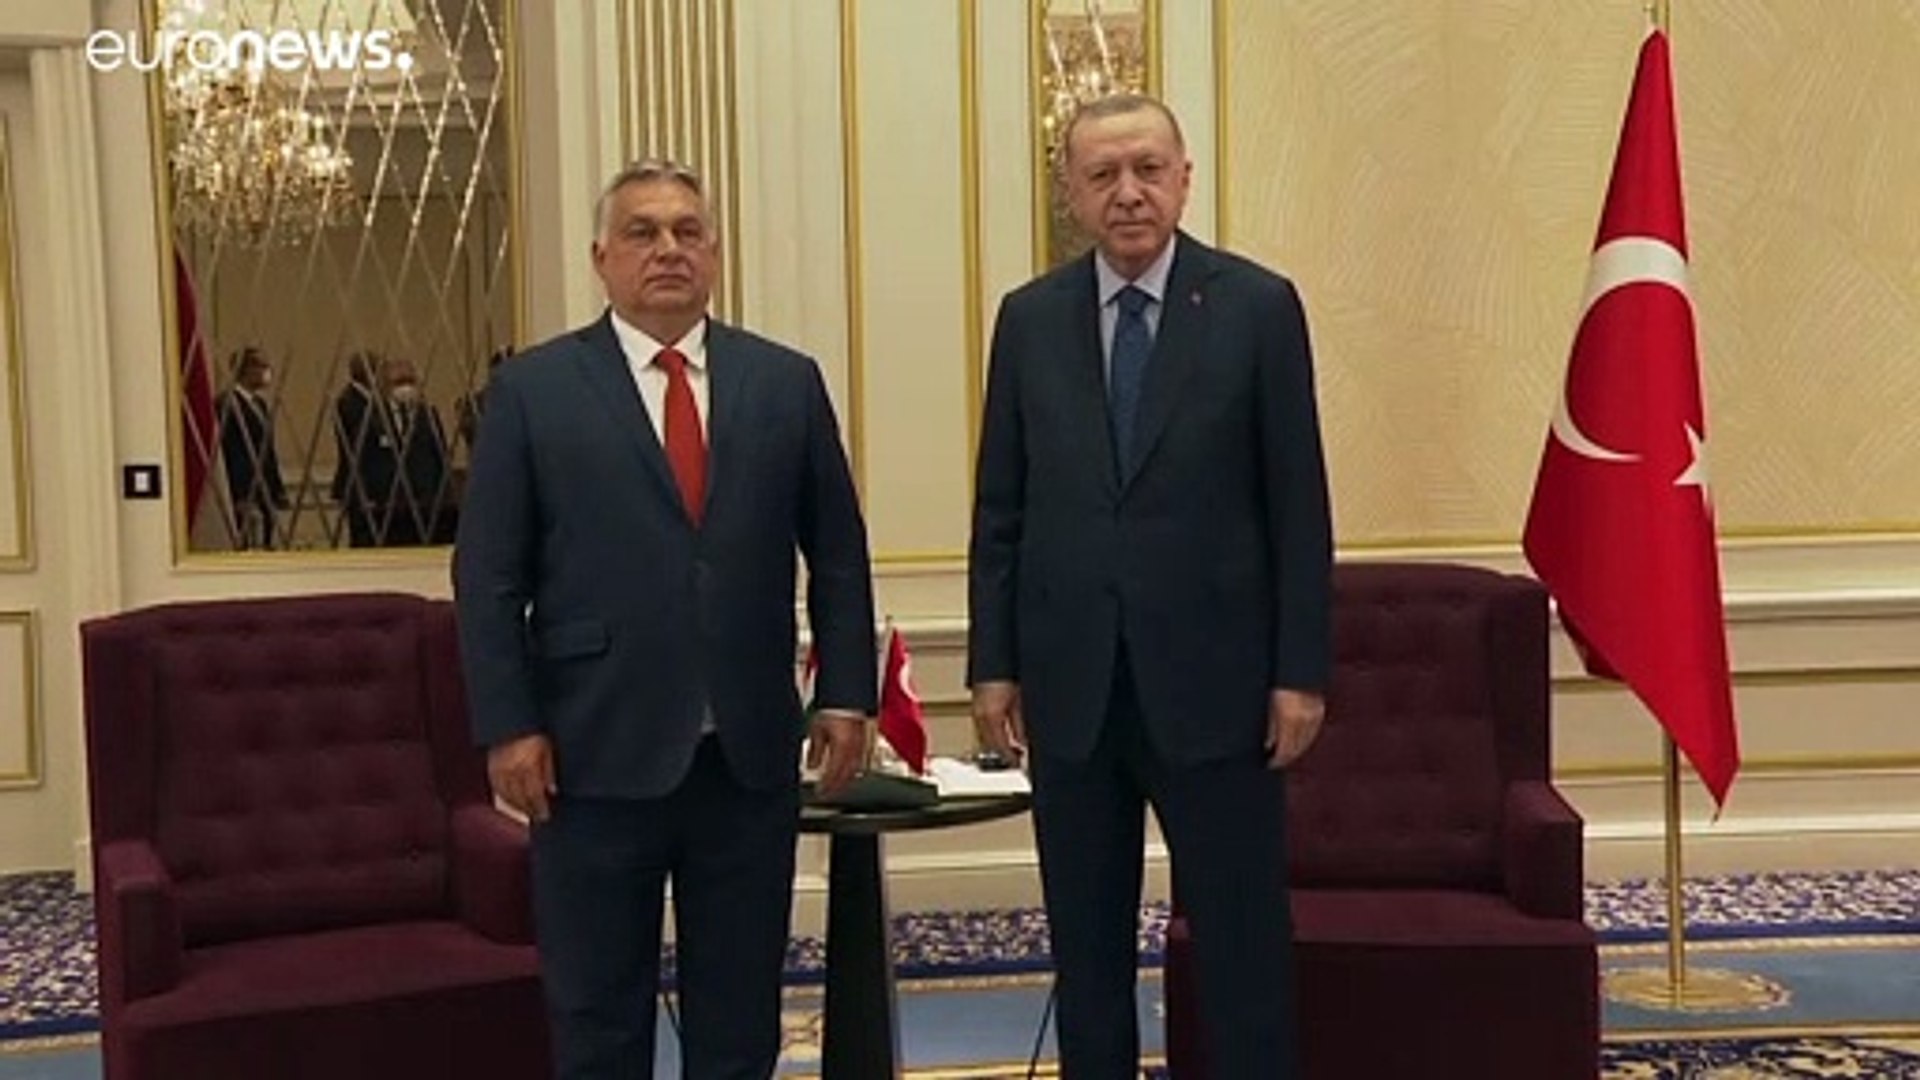 ⁣NATO-csúcs: katonai együttműködésről is tárgyalt Orbán Viktor a török elnökkel